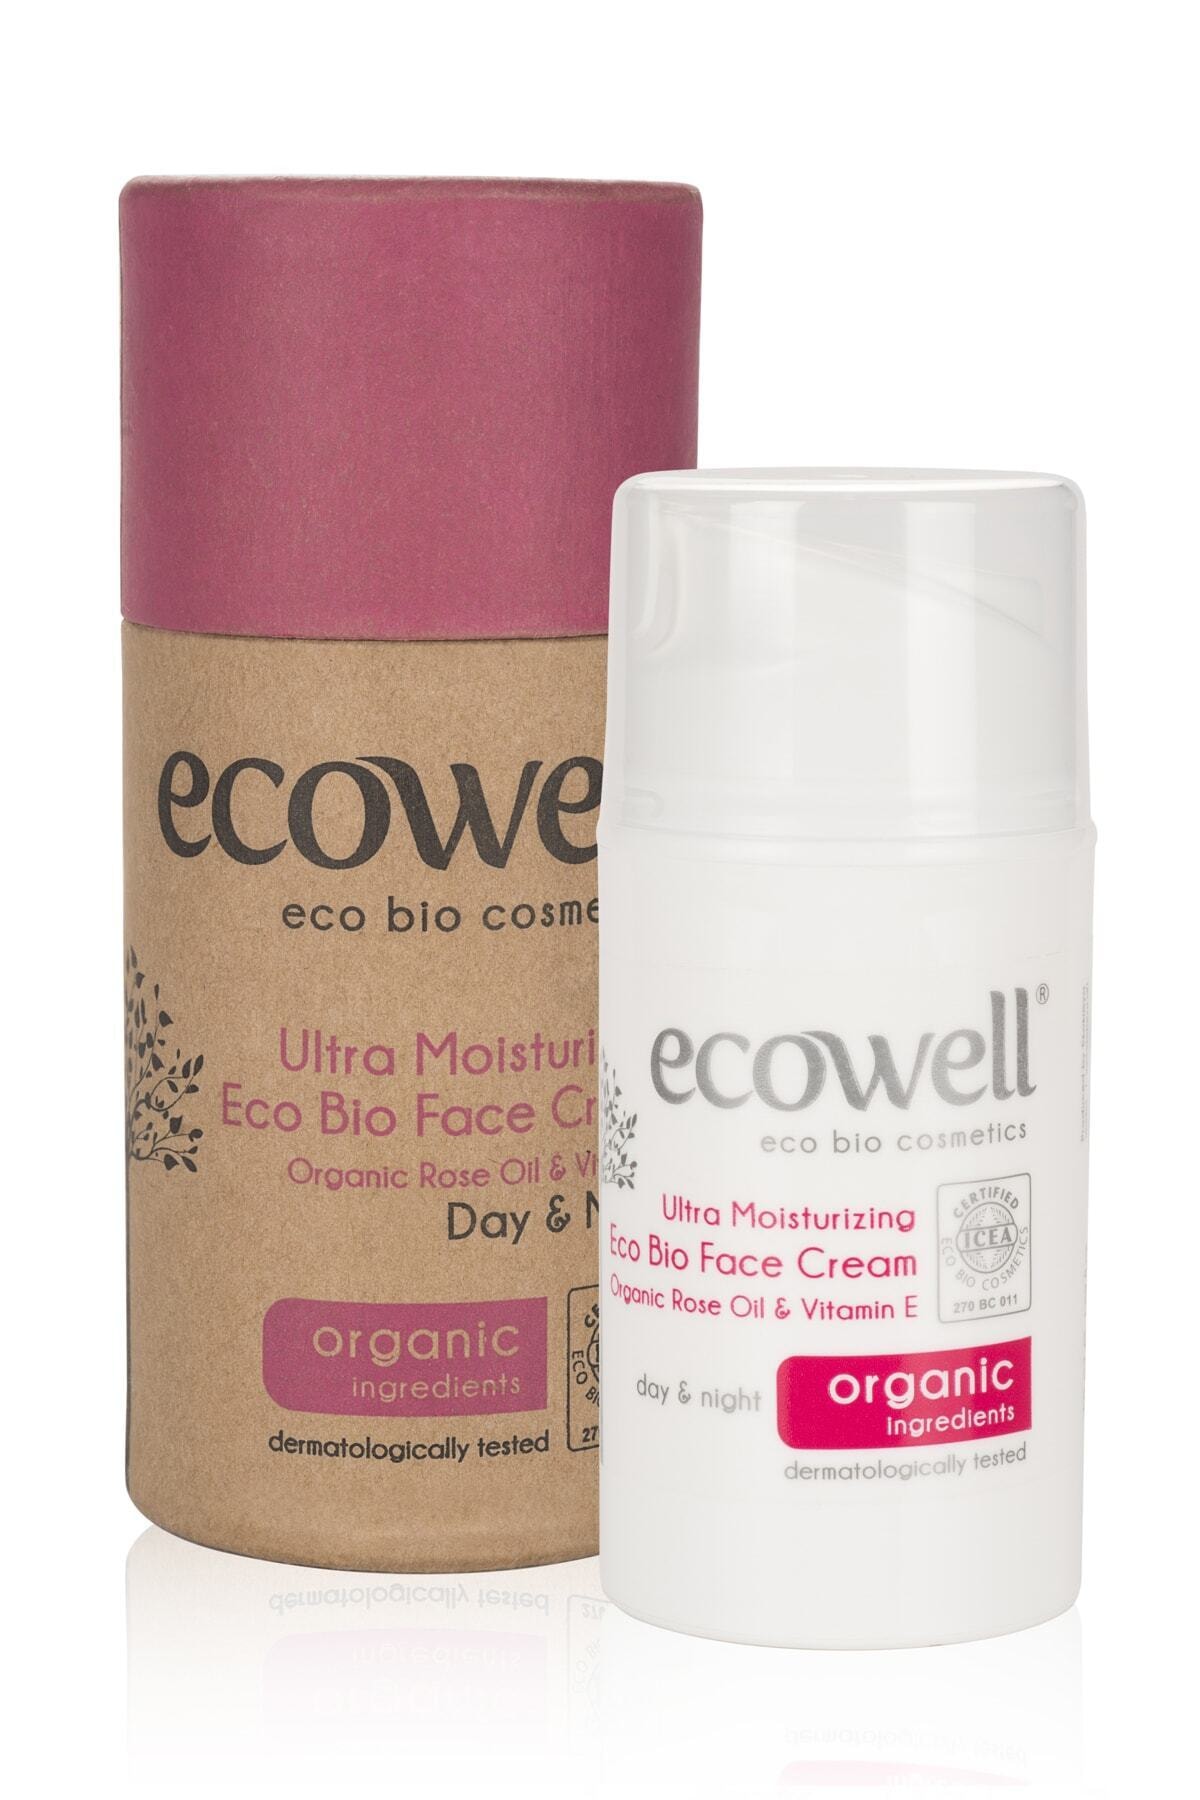 Ecowell Organik Ultra Nemlendirici Eco Bio Yüz Bakım Kremi (50 Ml) - Organik Gül Yağı & E Vitamini